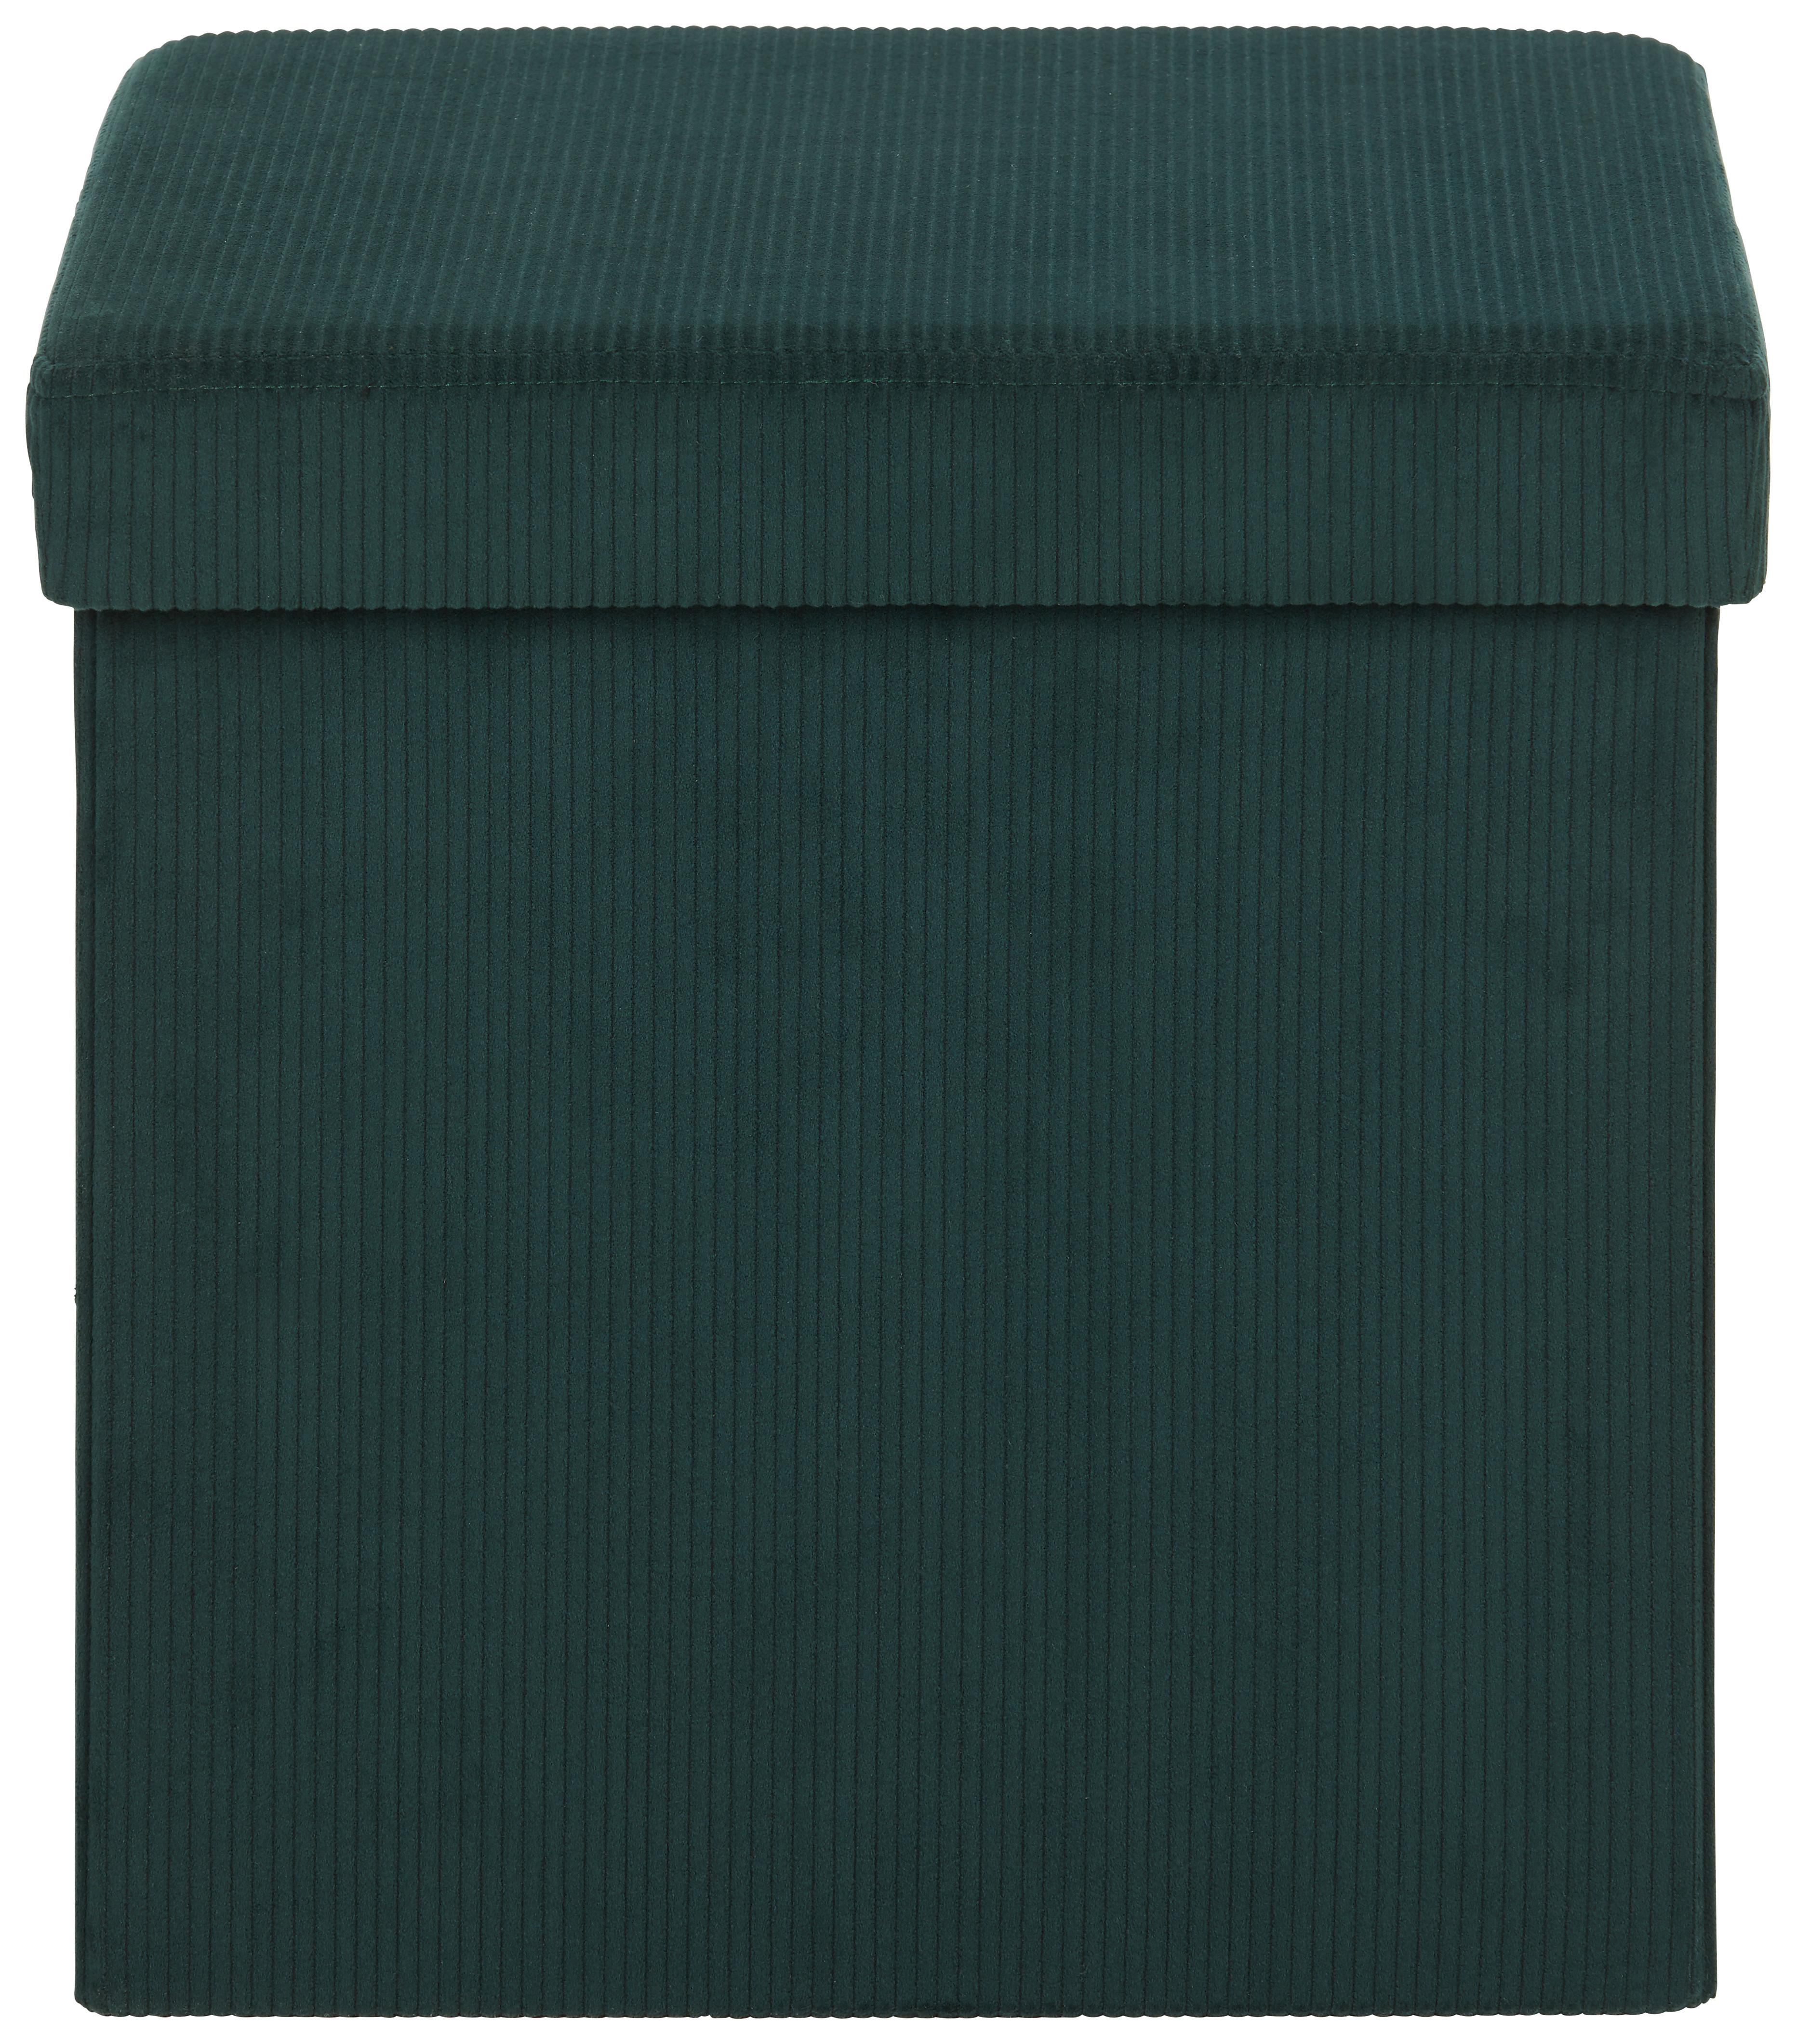 Zaboj Za Sedenje Cord -Sb-, Temno Zelena - temno zelena, tekstil (38/38/38cm) - Modern Living